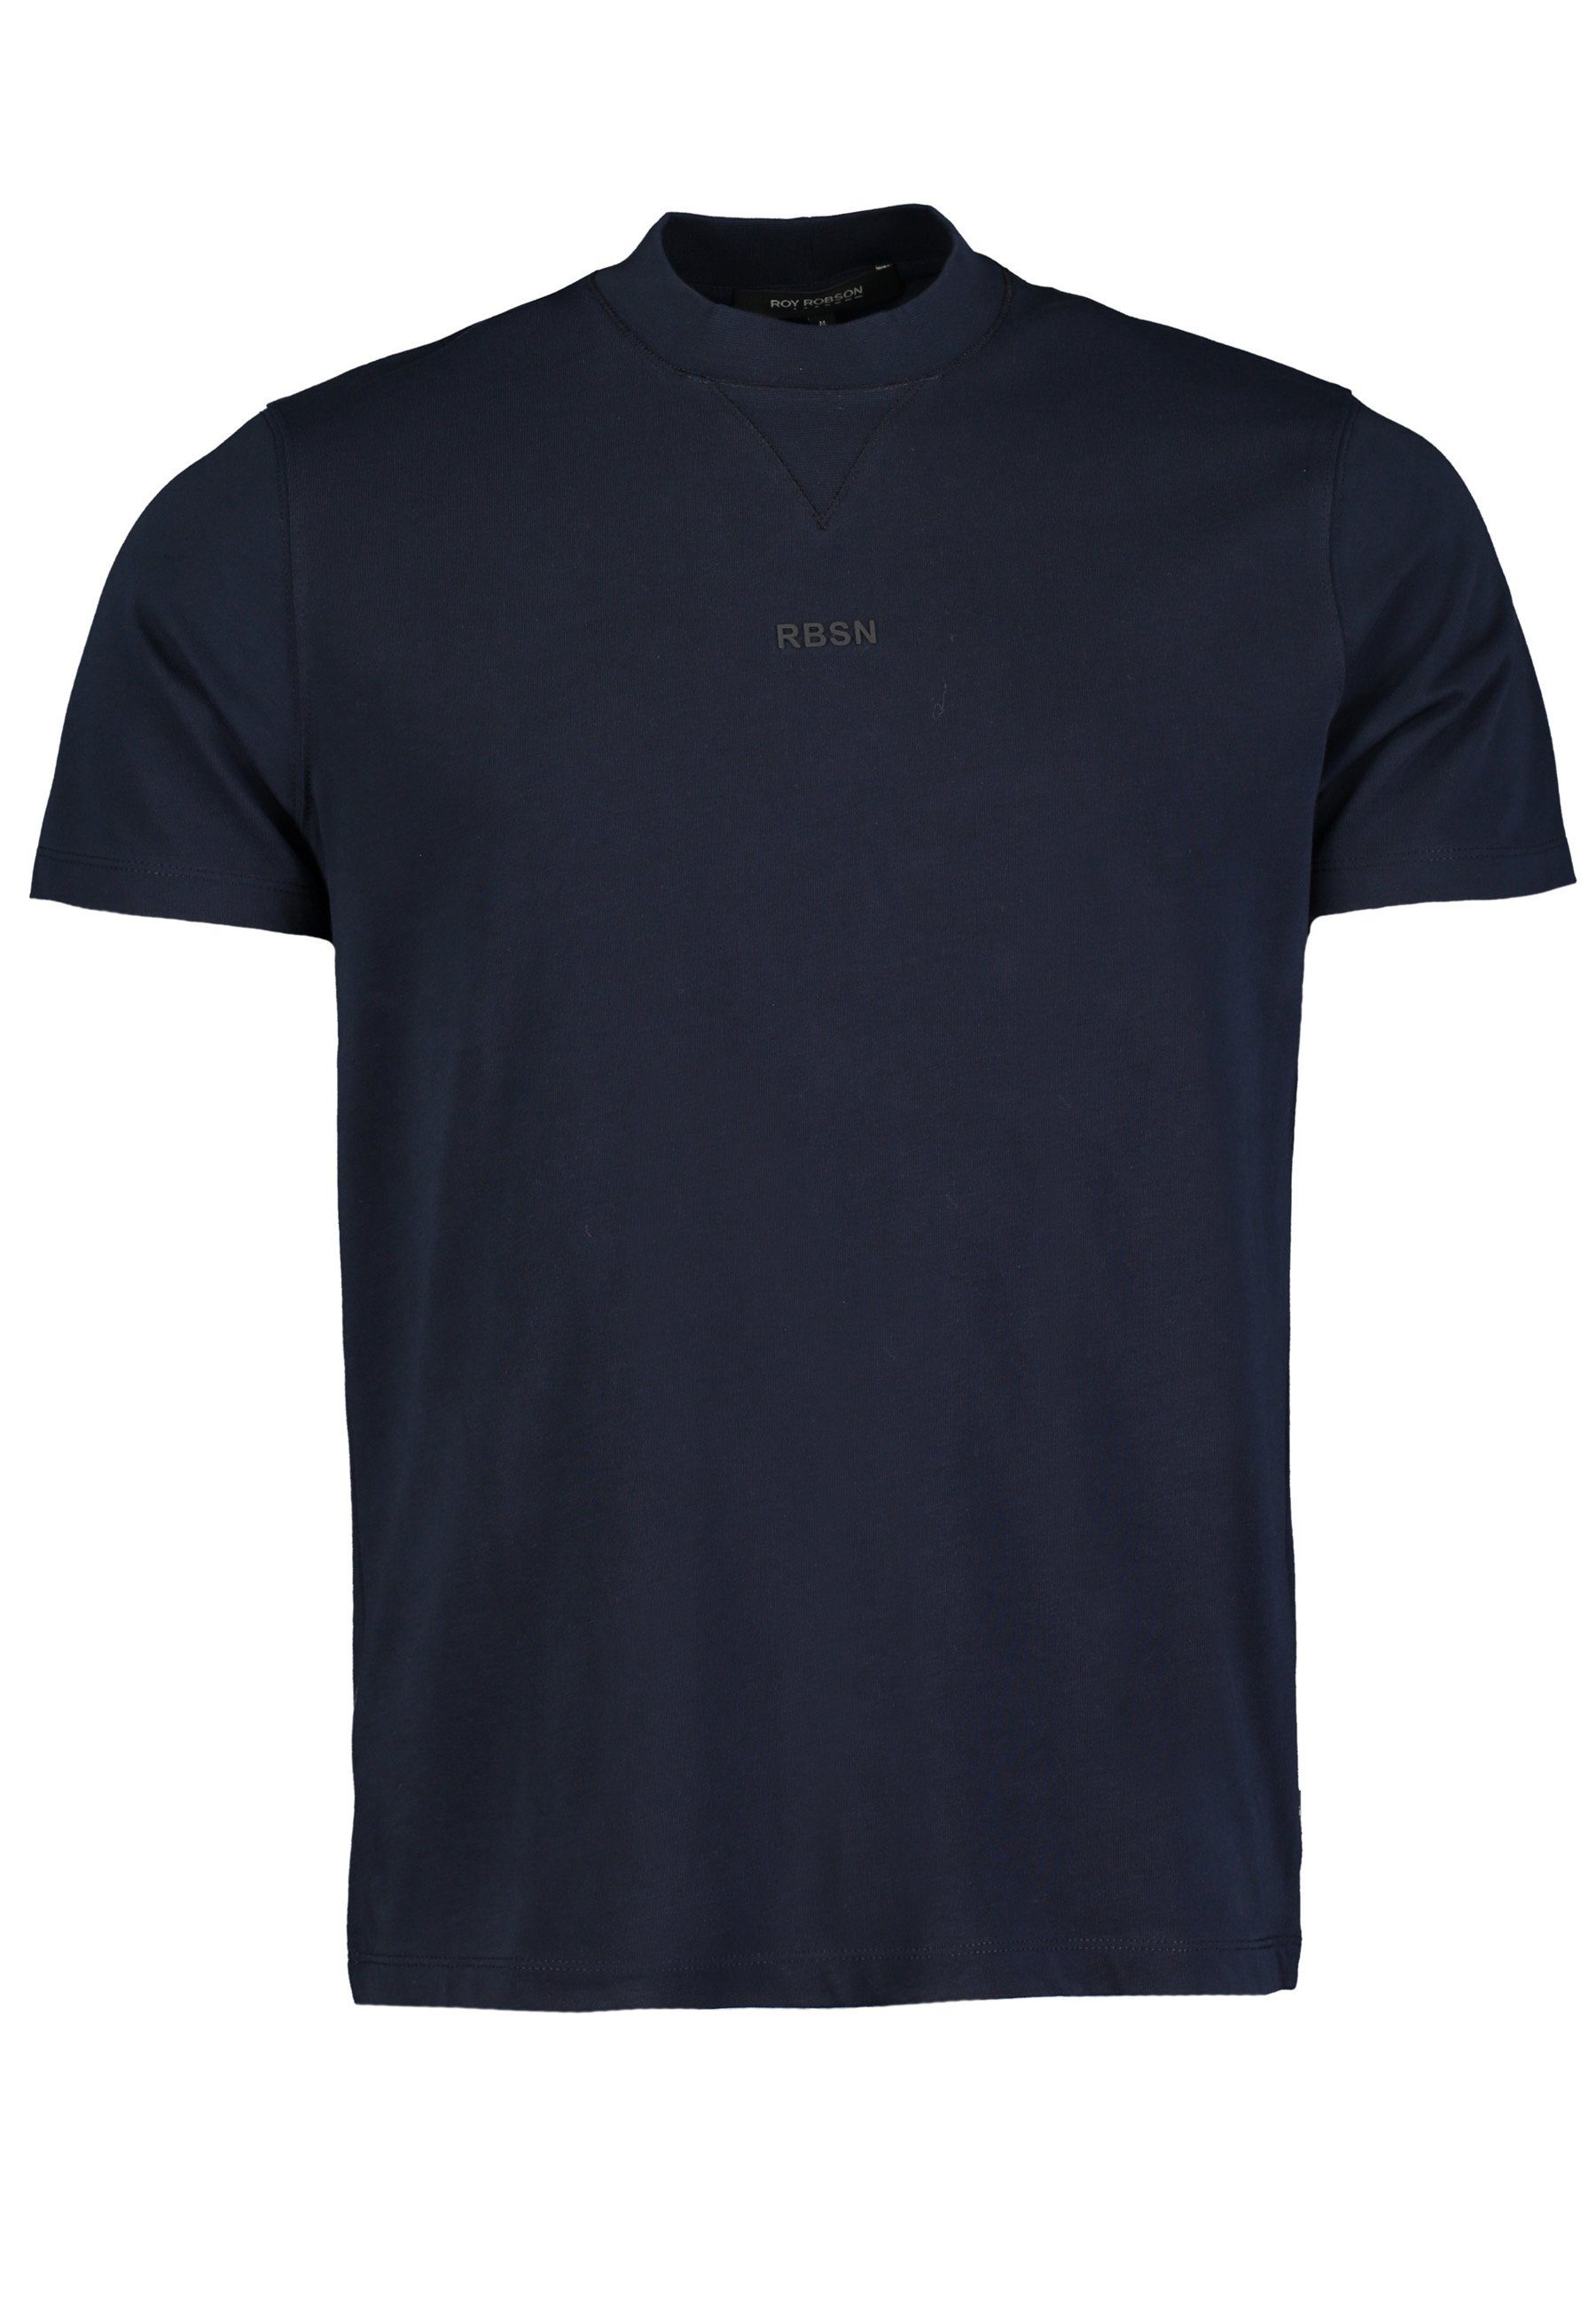 Roy Robson T-Shirt mit dunkelblau T-Shirt Rundhals